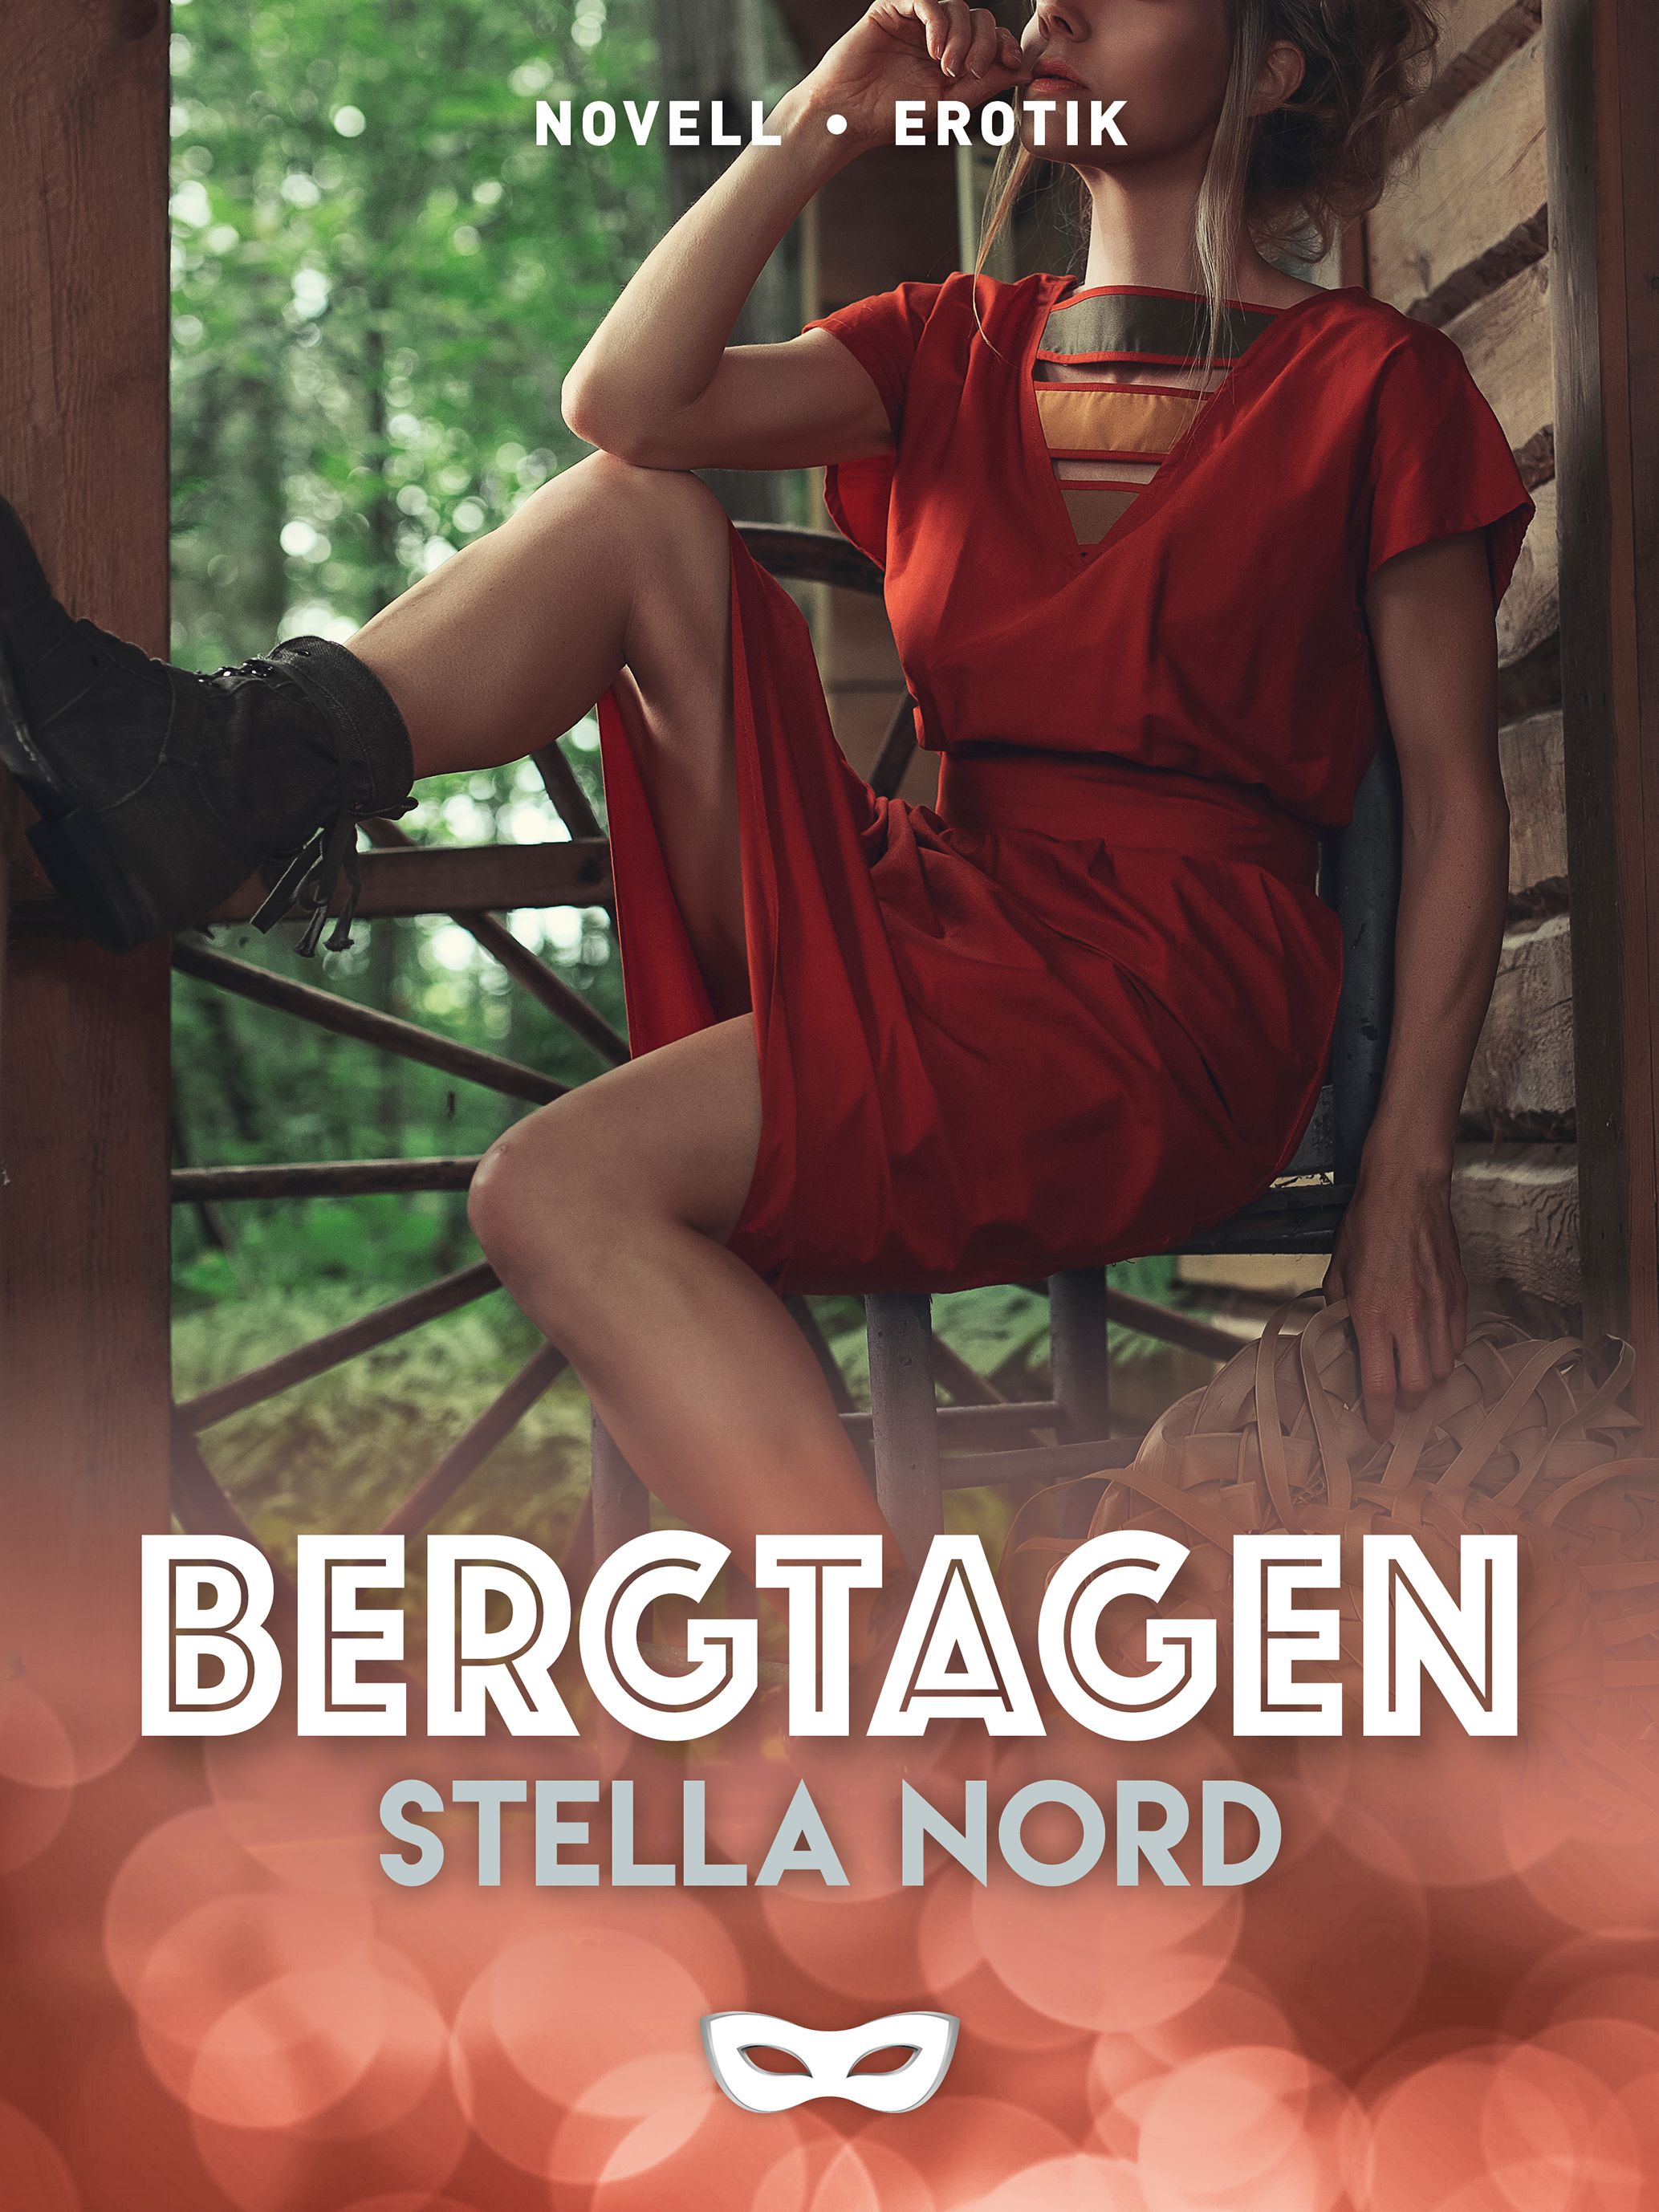 Bergtagen, e-bog af Stella Nord